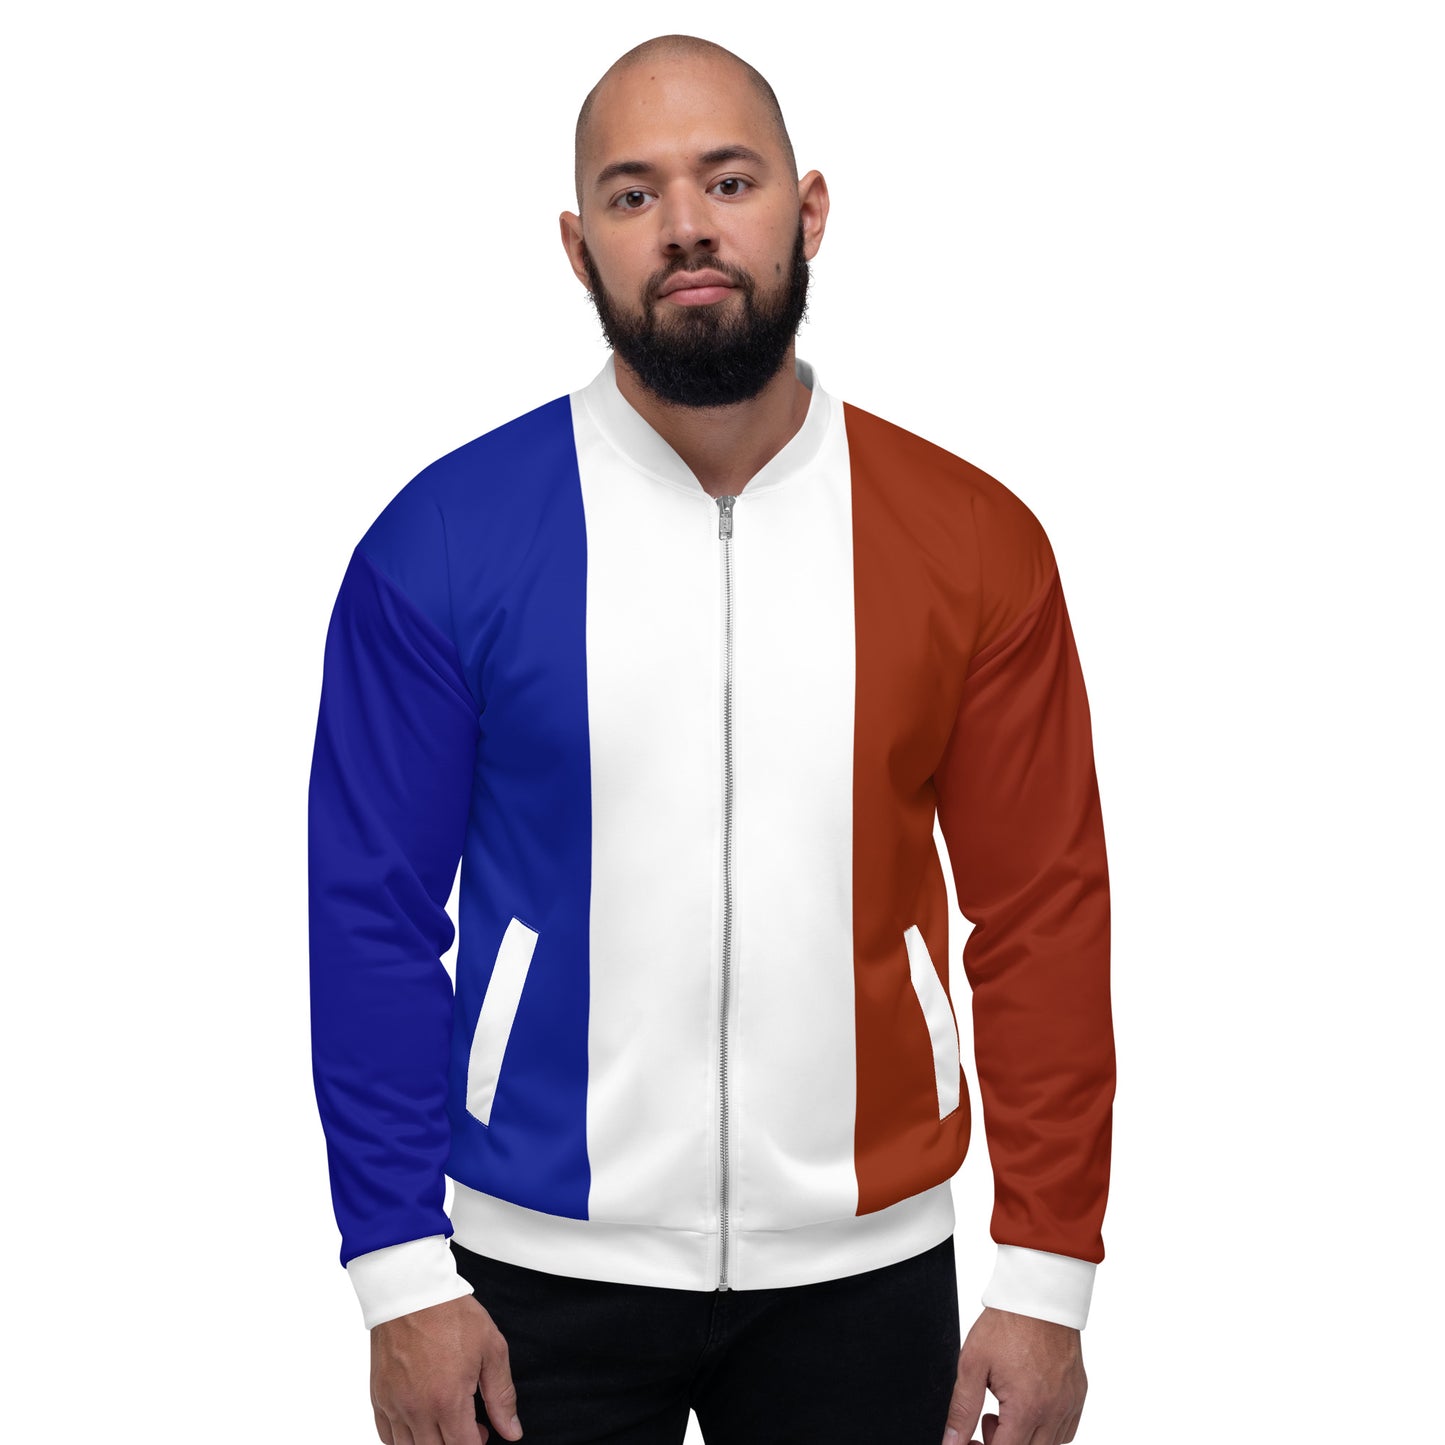 Frans jack / bomberjack met kleuren van de vlag van Frankrijk / unisex kleding